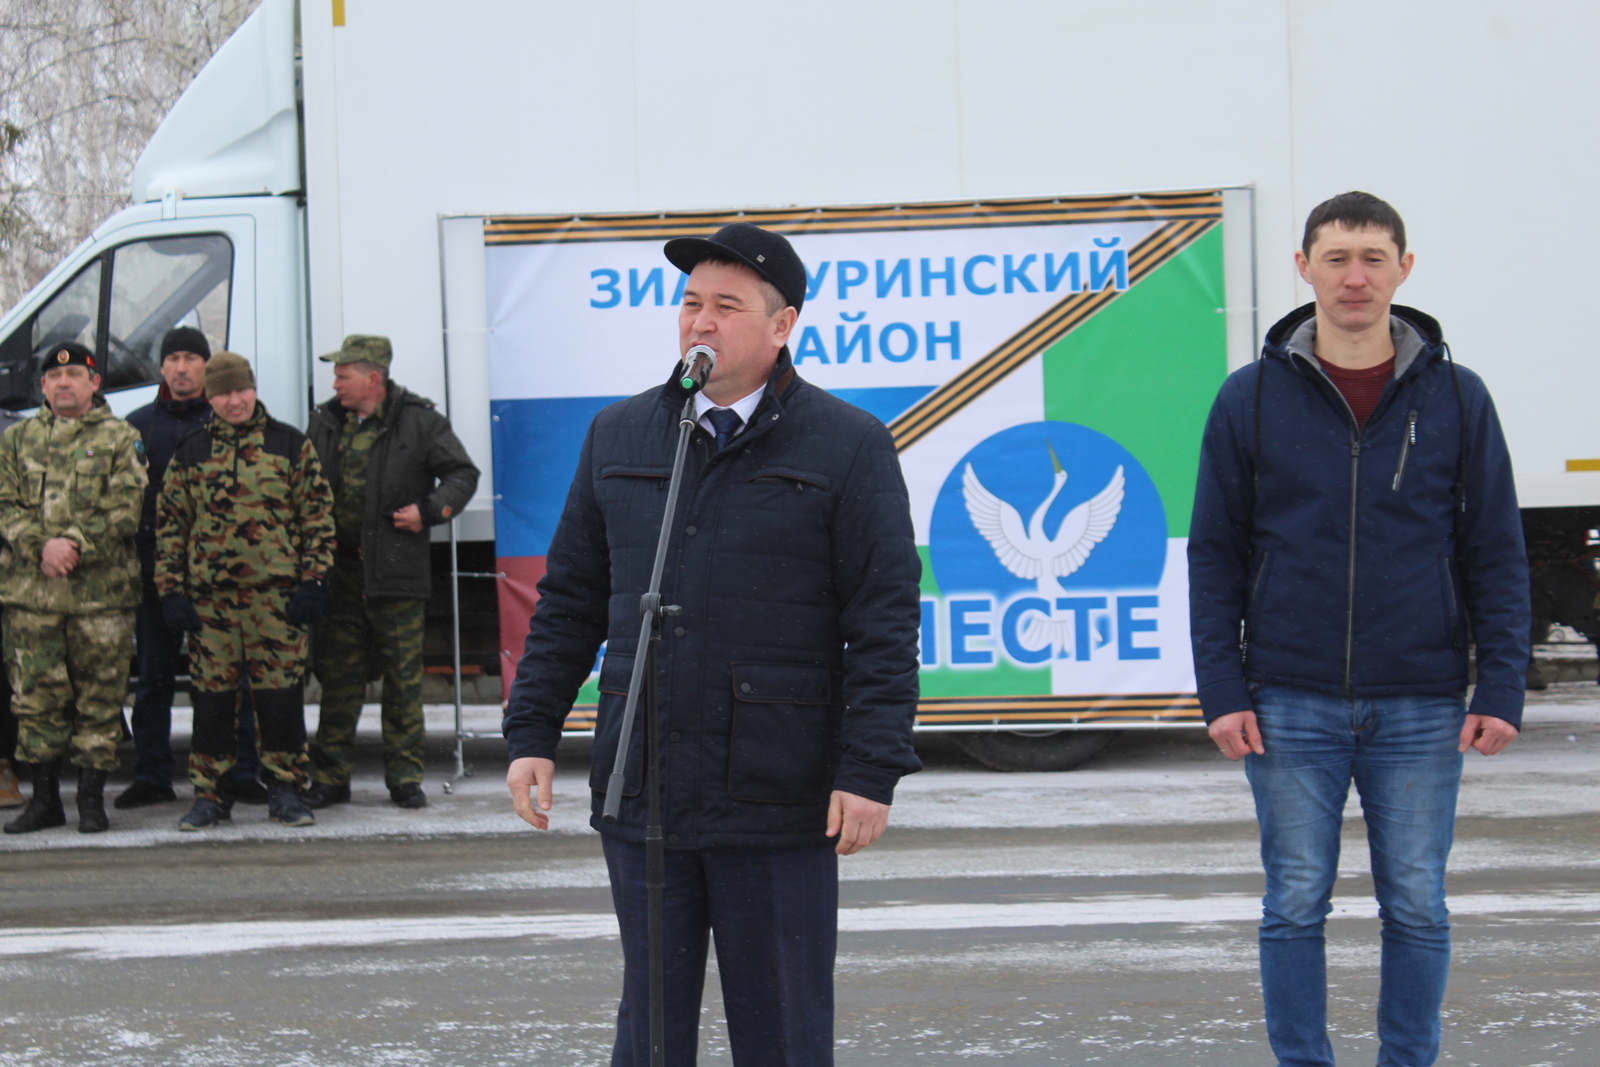 Зианчуринский район отправил гуманитарную помощь для жителей Донбасса